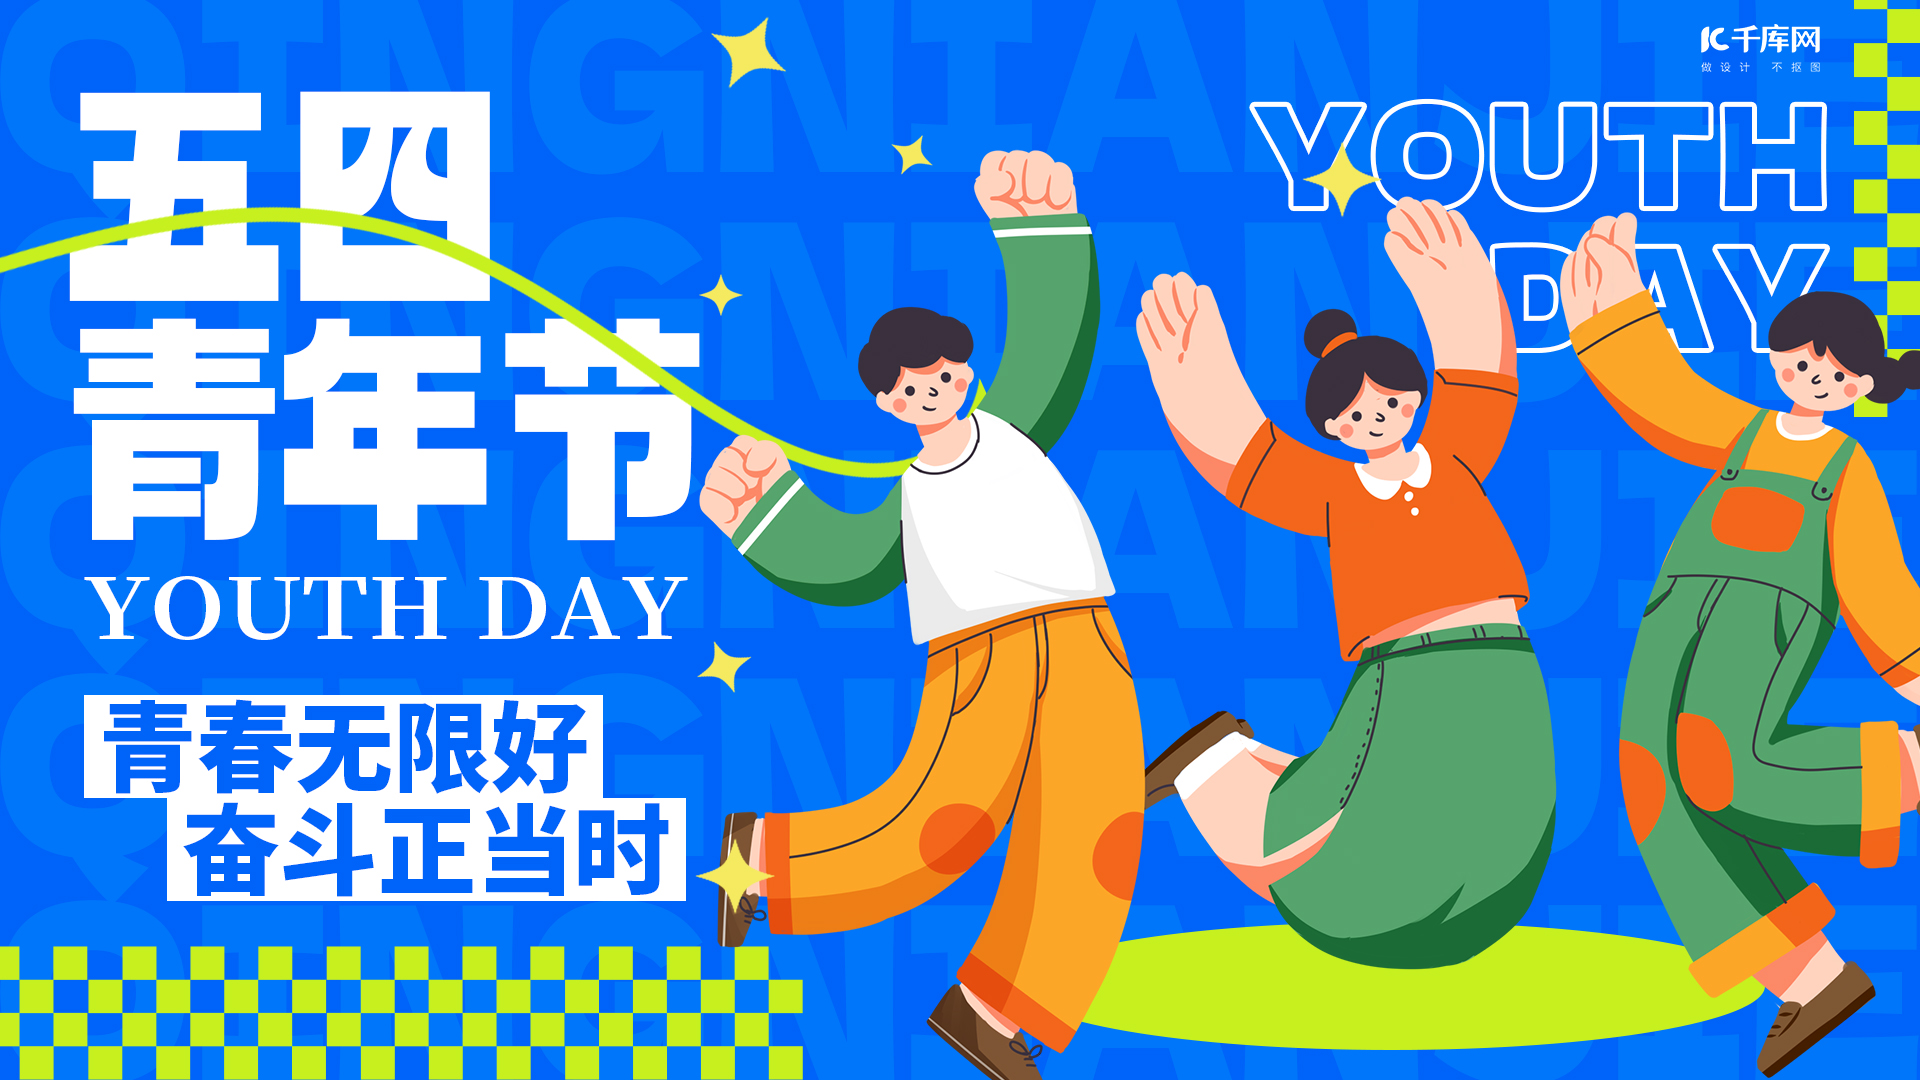 五四青年节节日宣传蓝色扁平创意横版海报手机海报素材图片